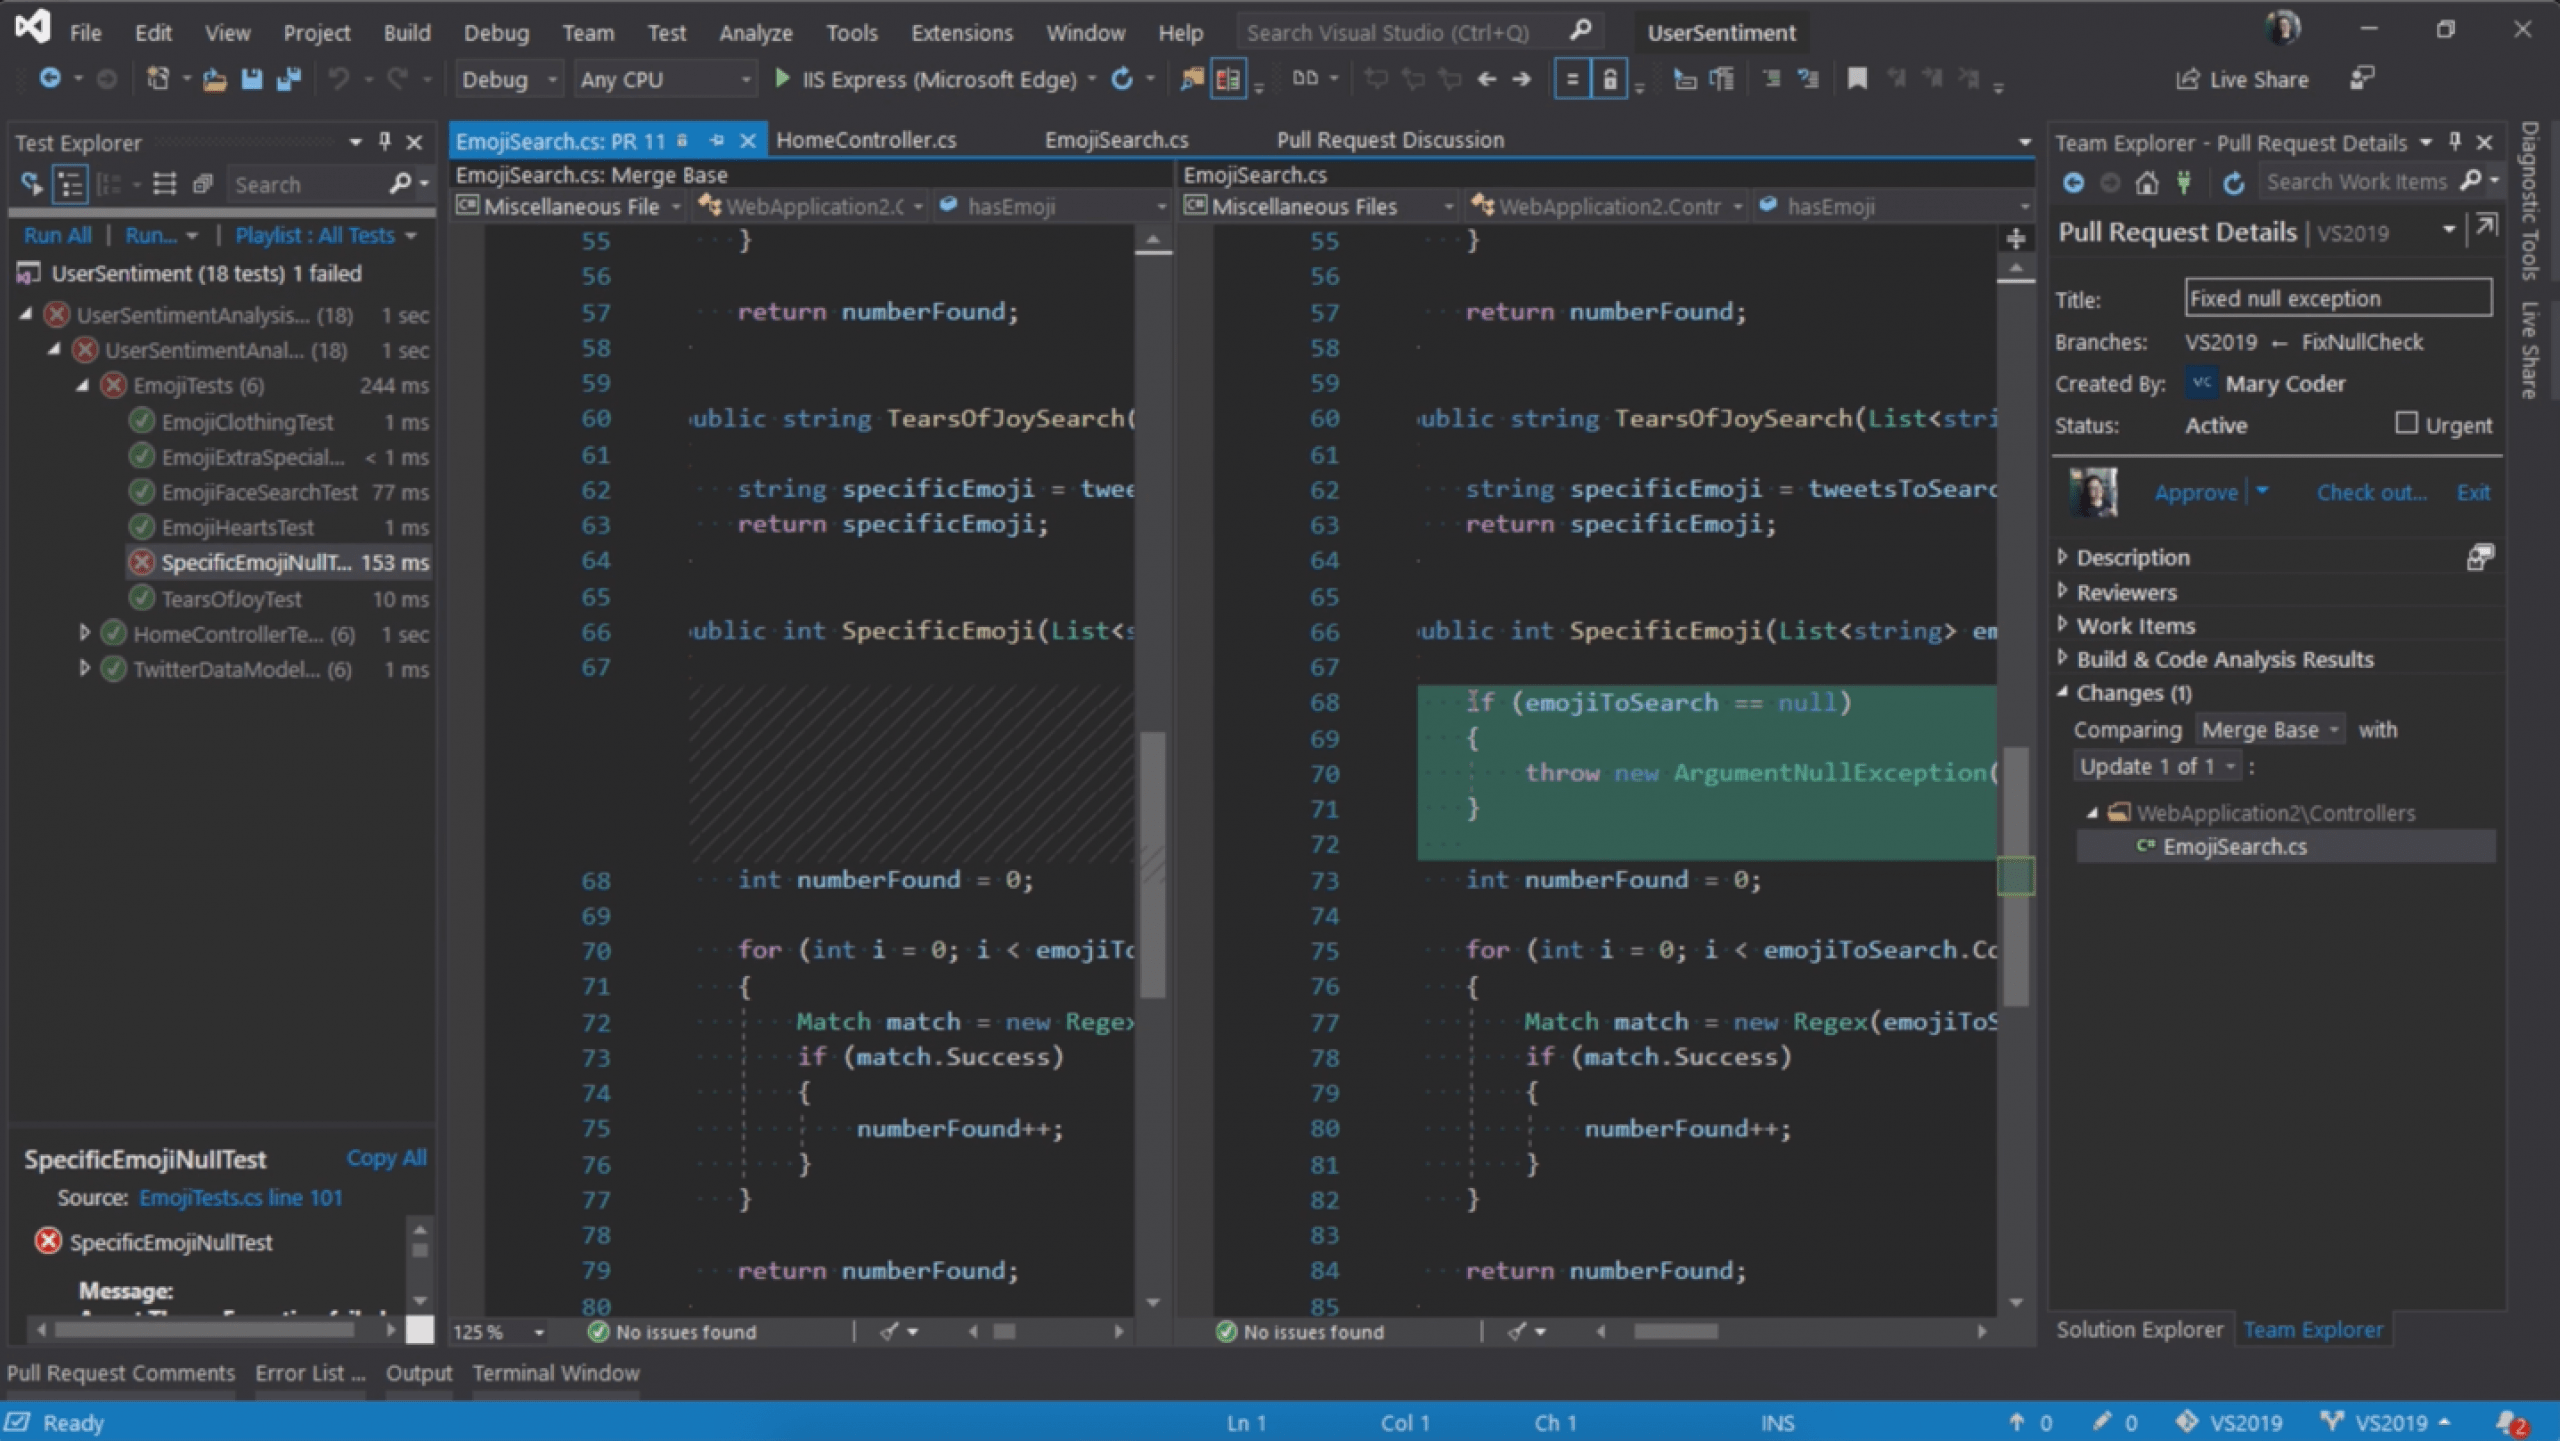 Microsoft Visual Studio 2019 Professional obrázok z programu v popise produktu.